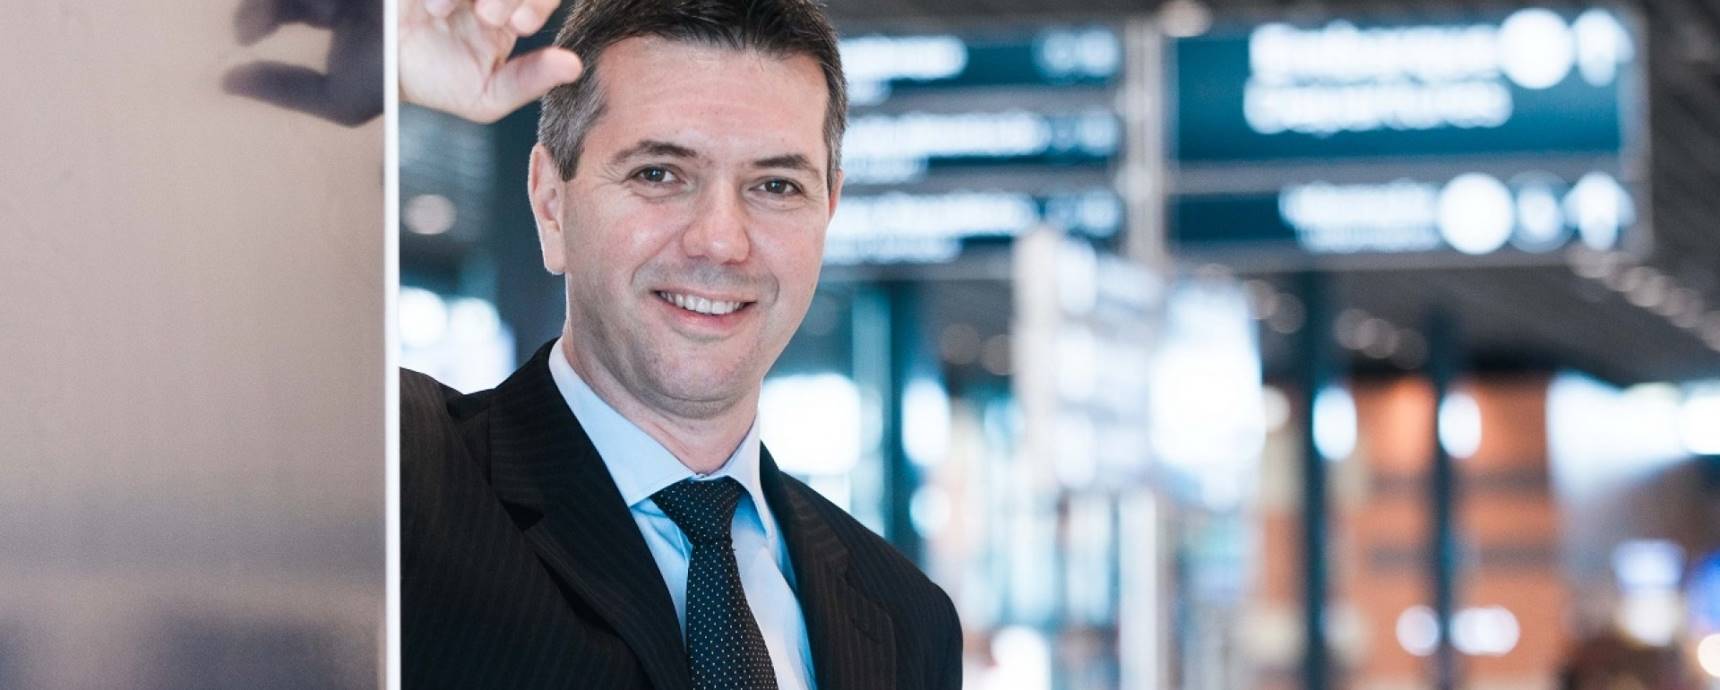 Ricardo Gesse es el nuevo director general de los aeropuertos de Florianópolis, Vitória y Macaé